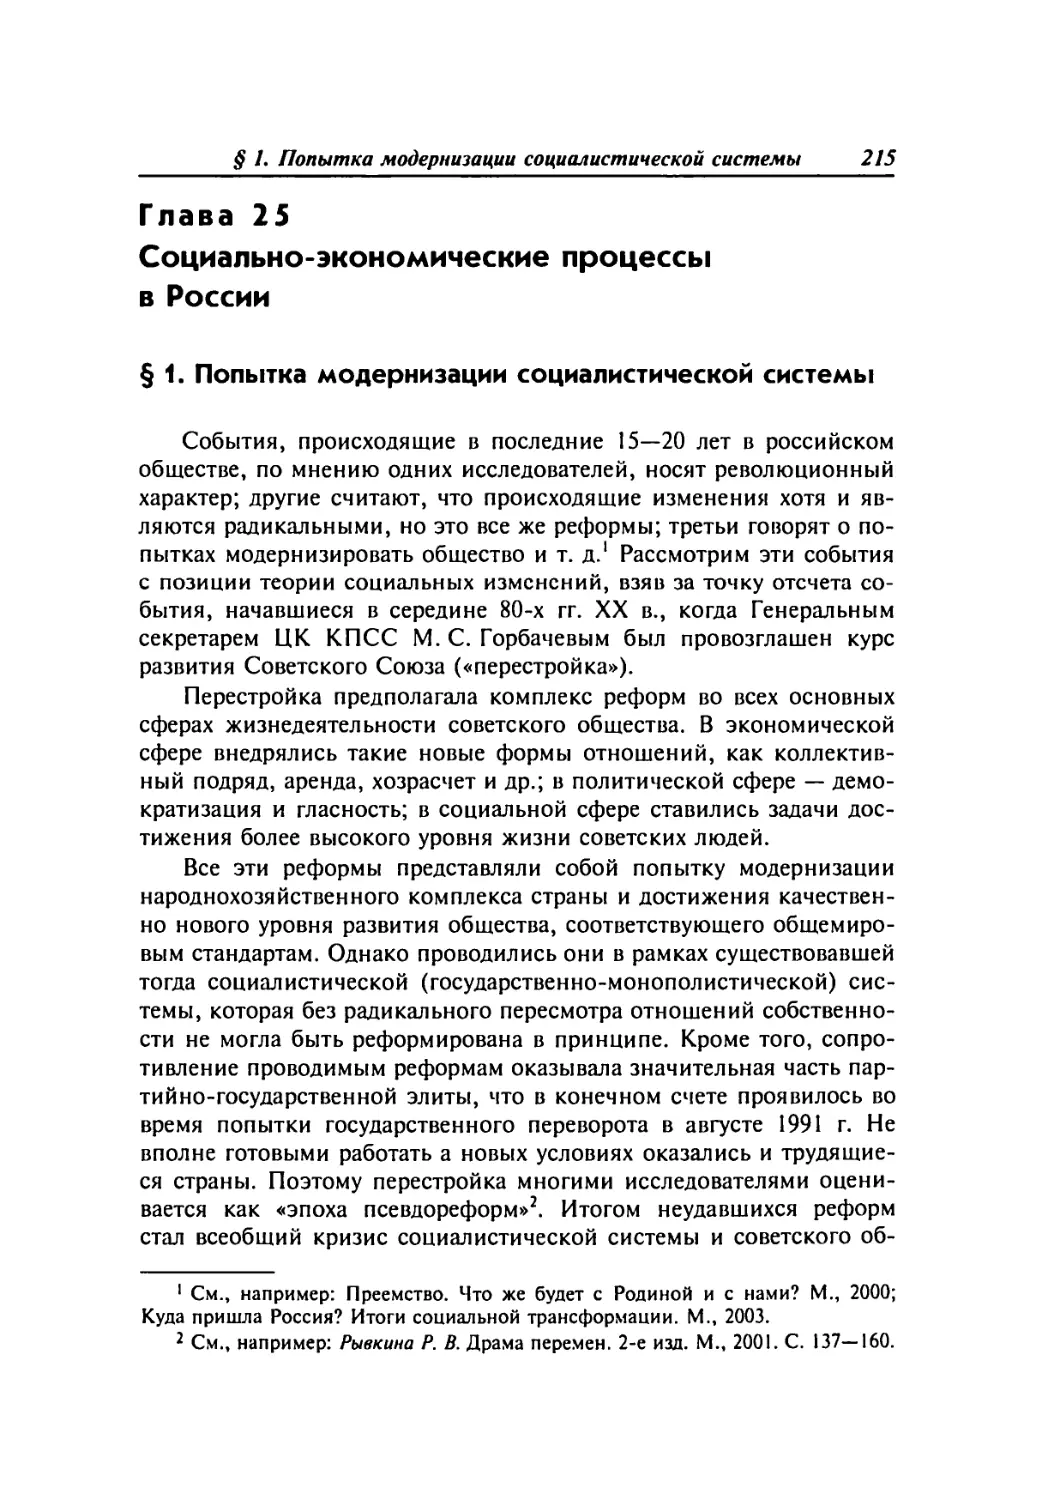 Глава 25. Социально-экономические процессы в России